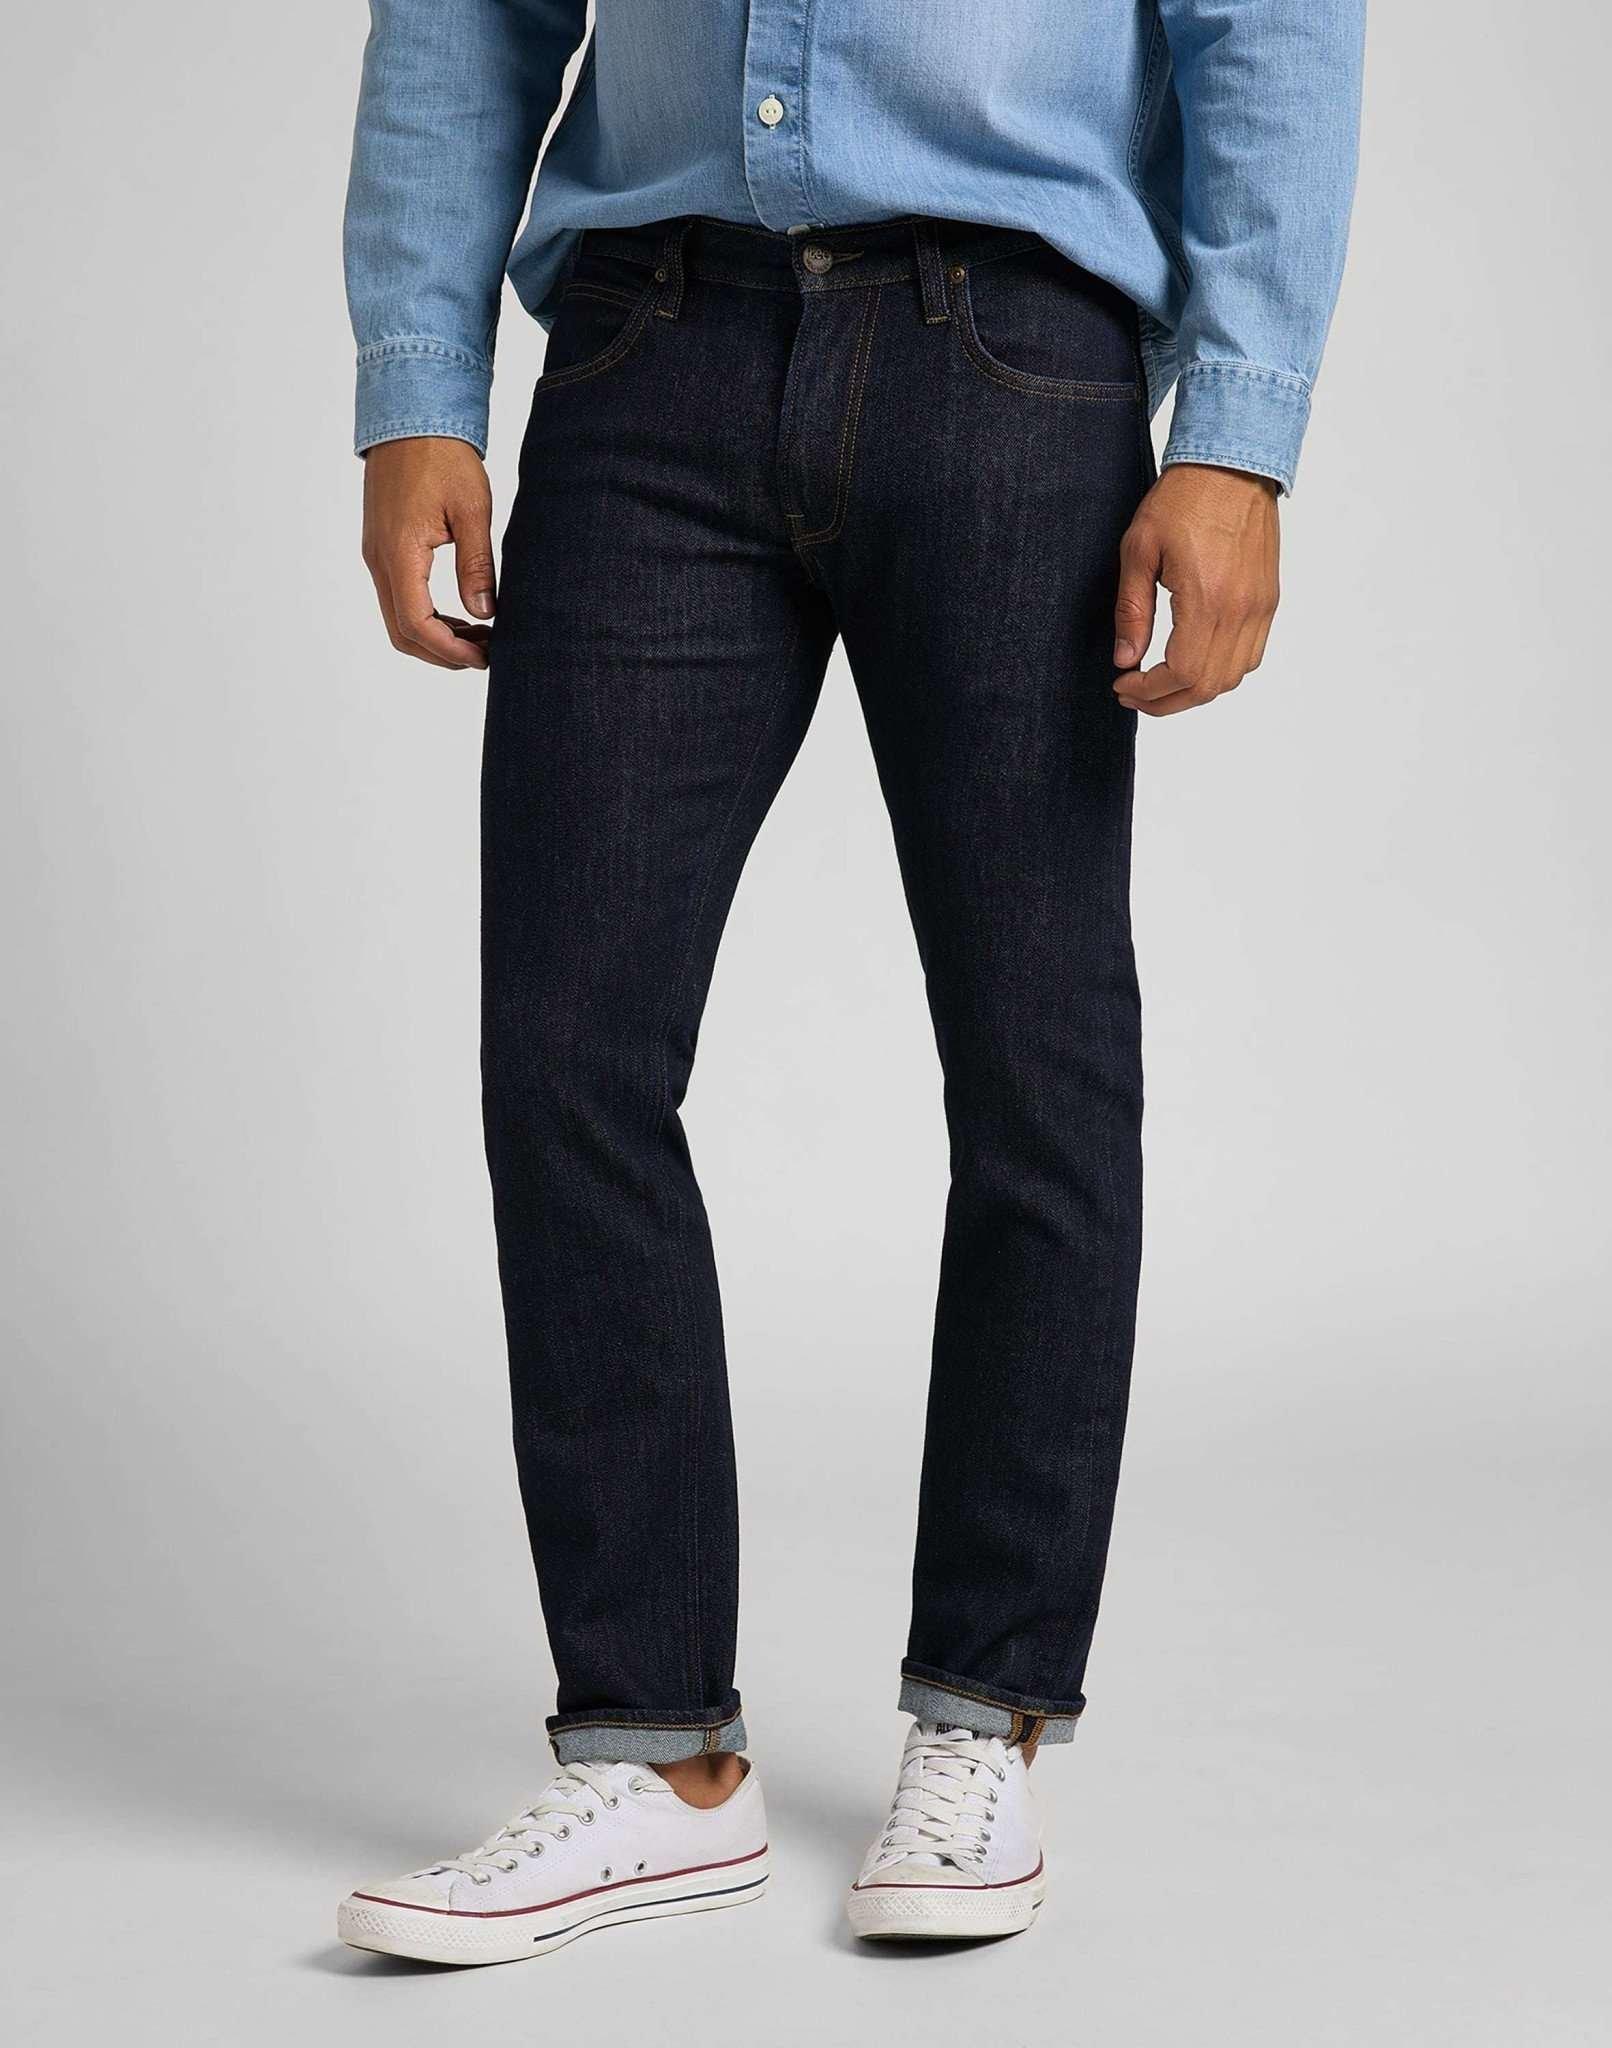 Jeans Straight Leg Daren Herren Blau Denim L30/W34 von Lee